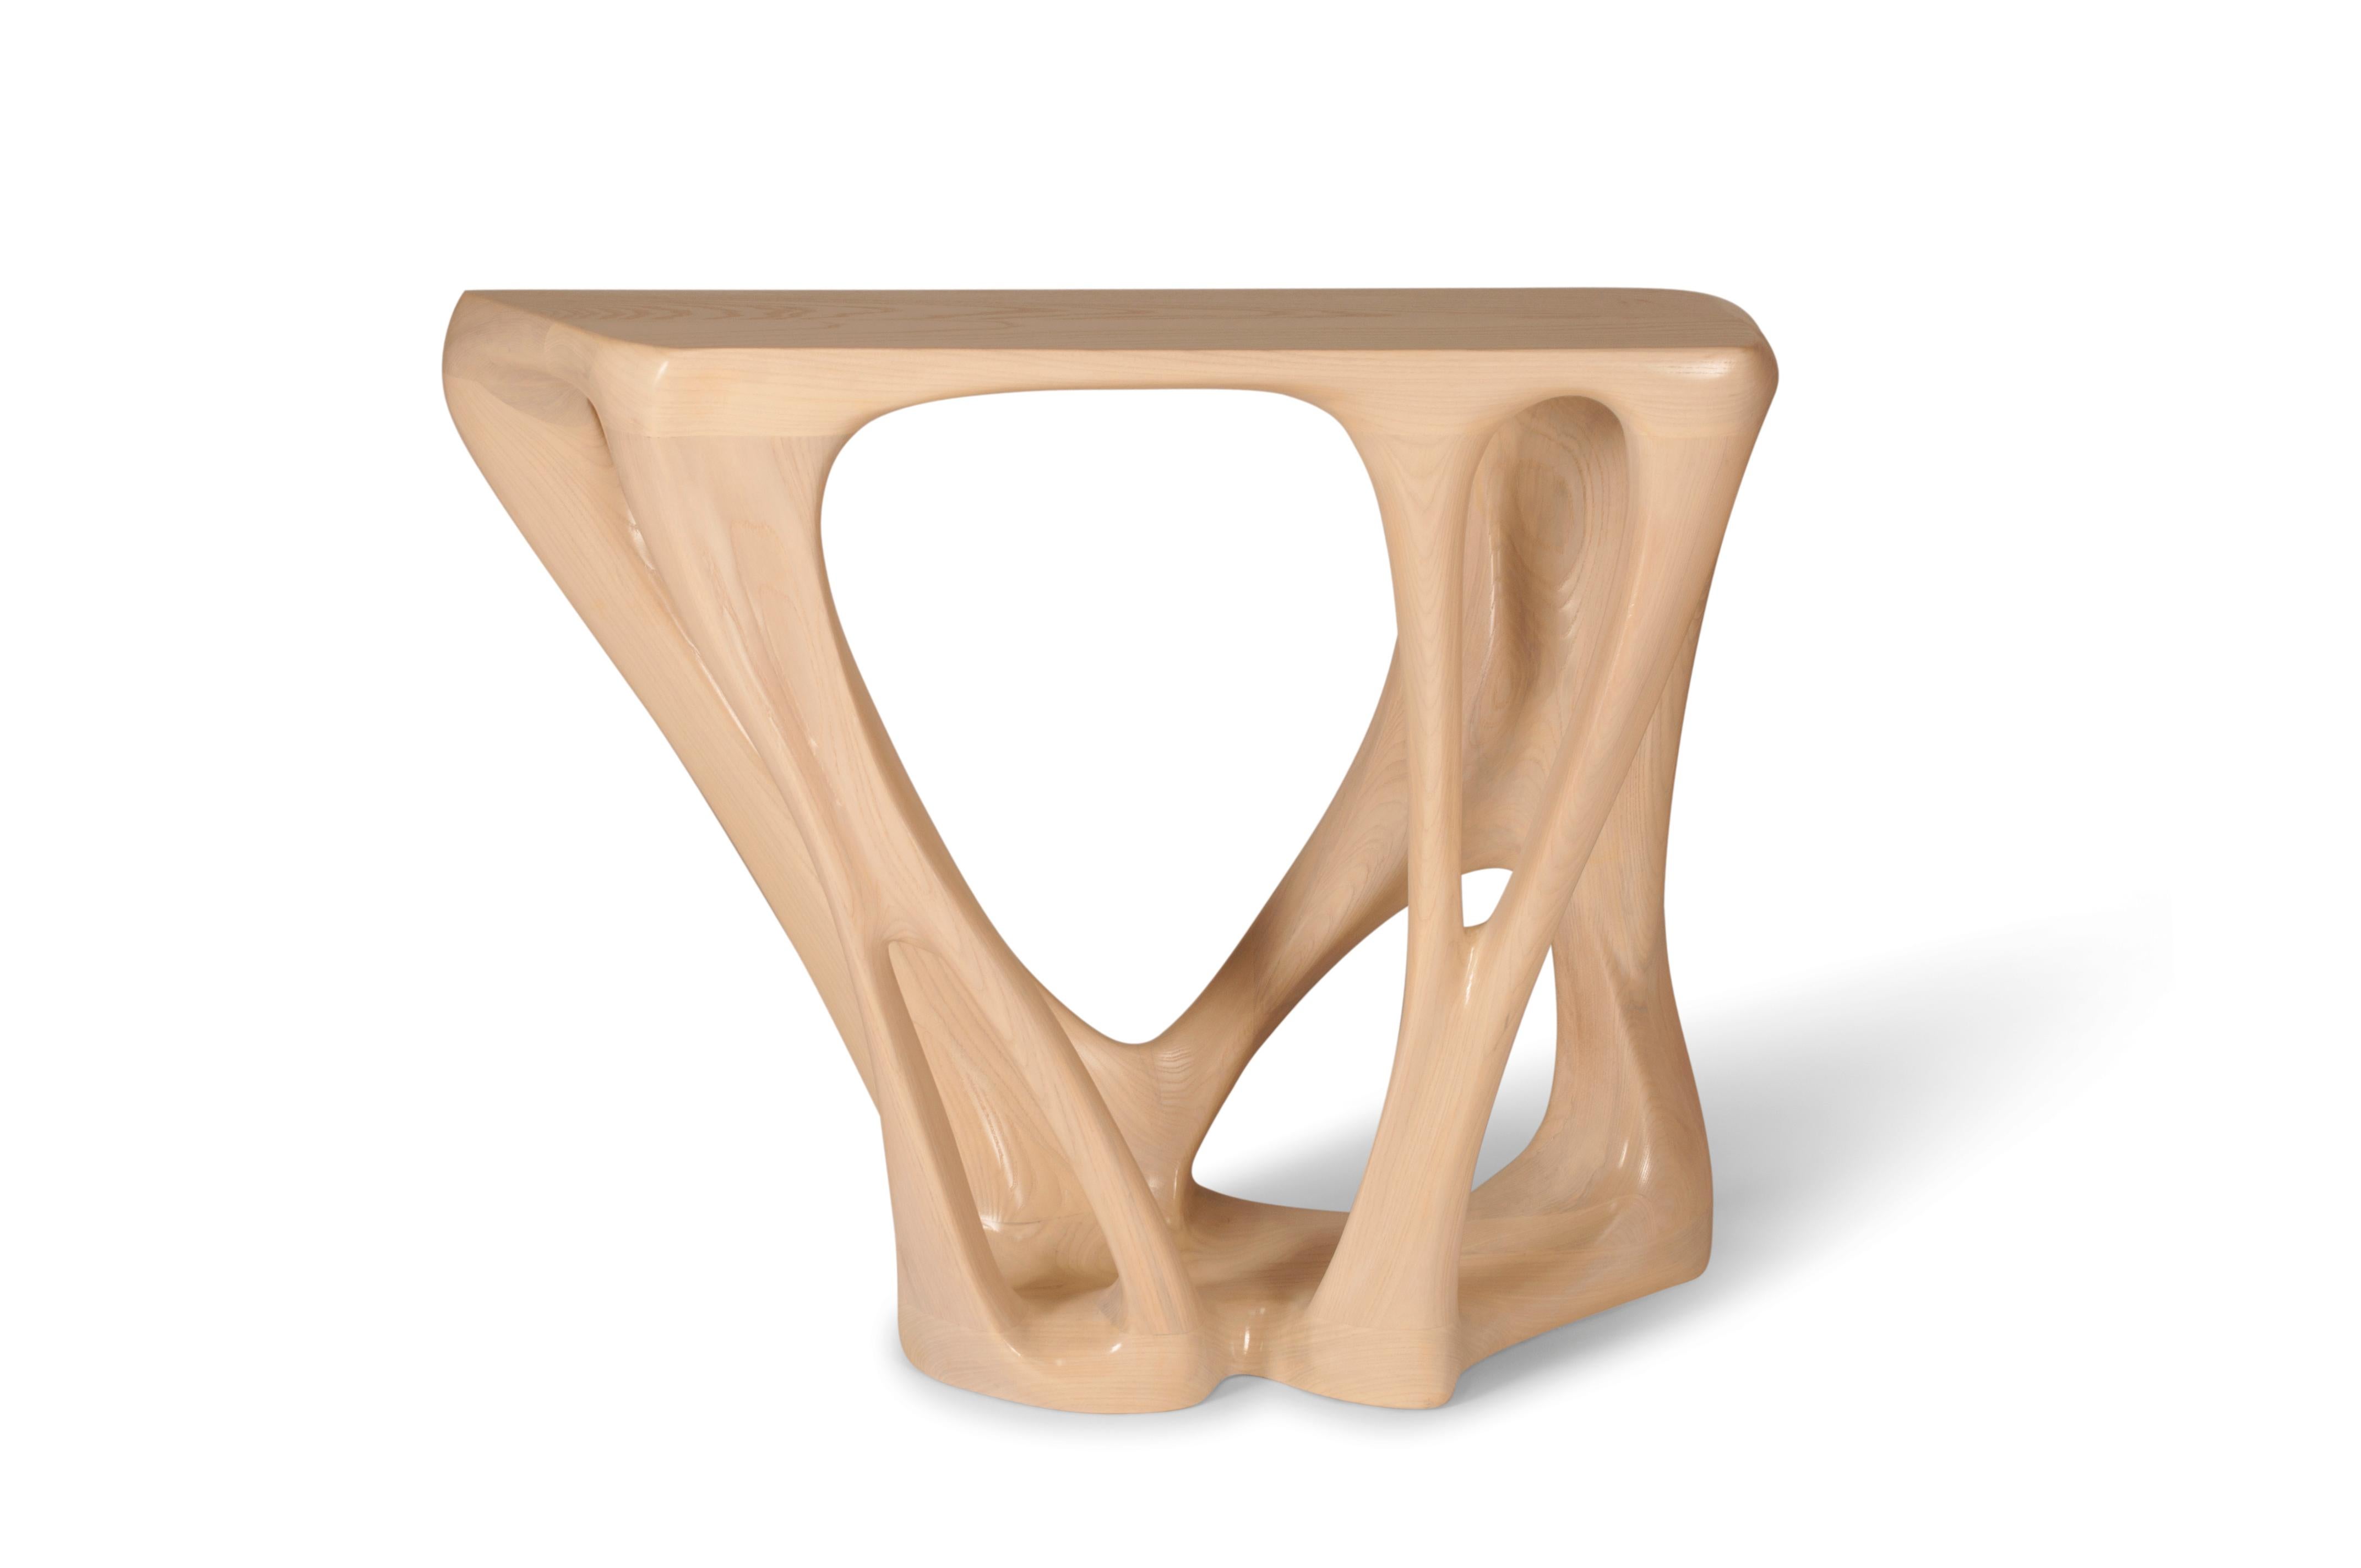 Der Konsolentisch Petra ist ein stilvoller, futuristischer, skulpturaler Kunsttisch mit einer dynamischen Form, entworfen und hergestellt von Amorph. Petra ist aus massivem Eschenholz, gebeizt und satiniert, gefertigt. Von Natur aus unterscheidet